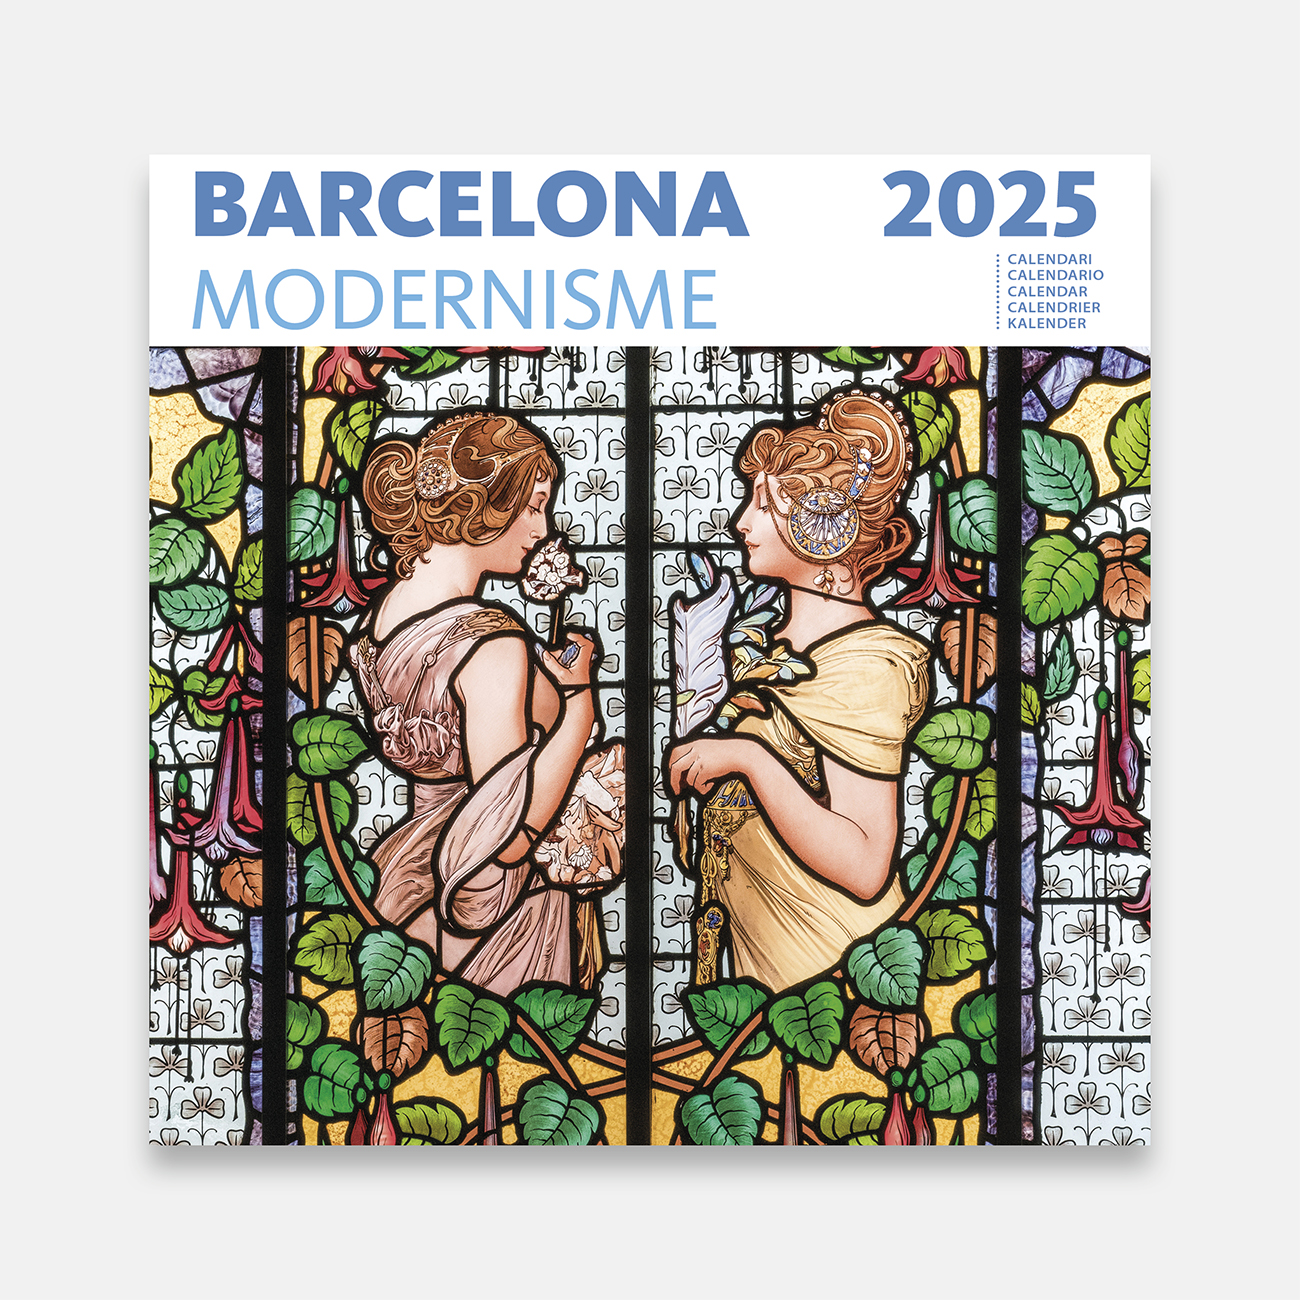 Calendari 2025 Barcelona a Modernisme 25mod calendario pared 2025 modernisme barcelona